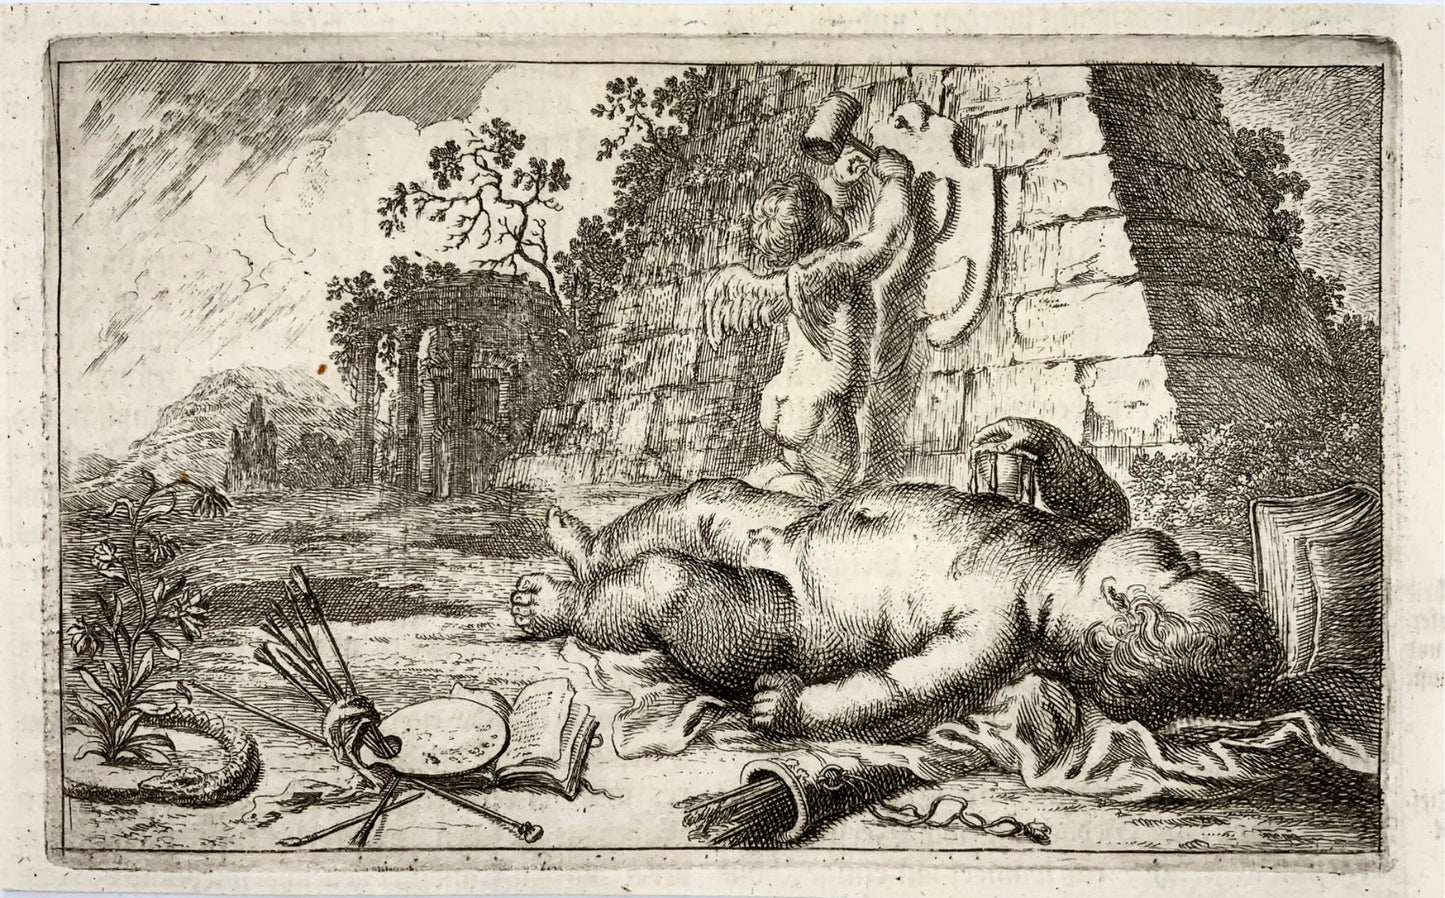 1676 Jean. Sandrart, allégorie sur l'art, palette, vignette, gravure sur cuivre